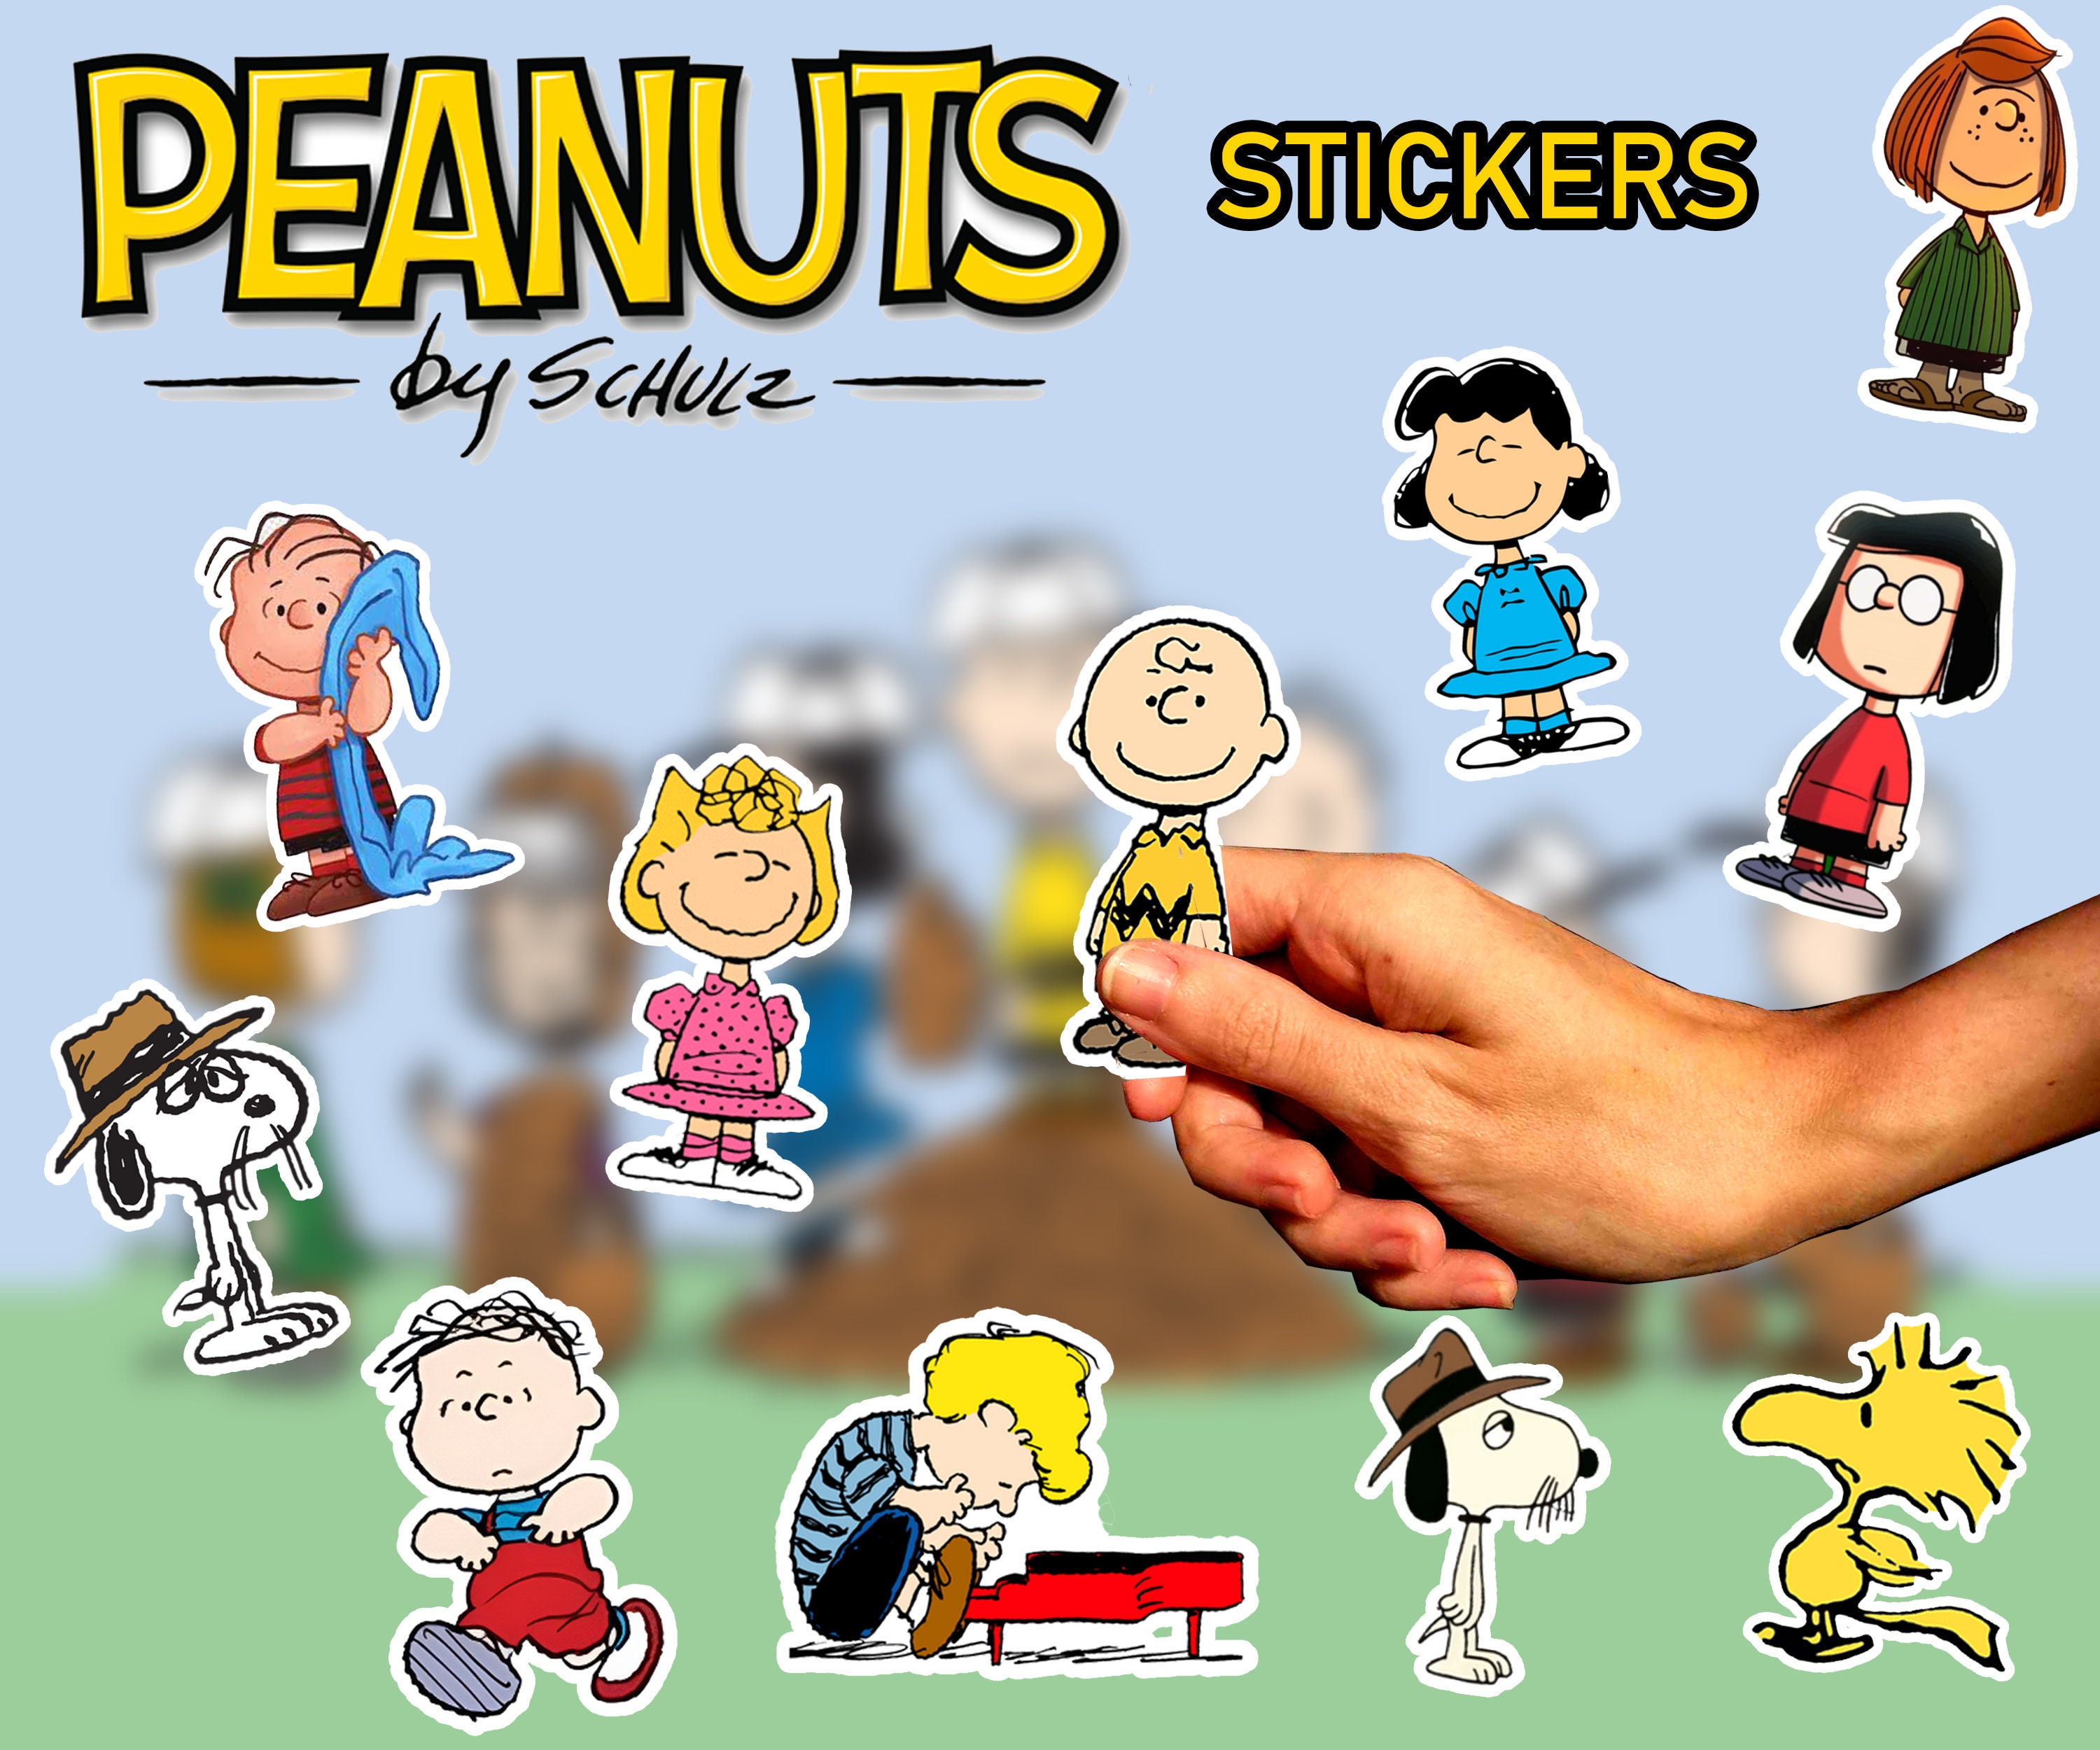 Snoopy charlie brown peanuts lachen zeichnen, snoopy aufkleber